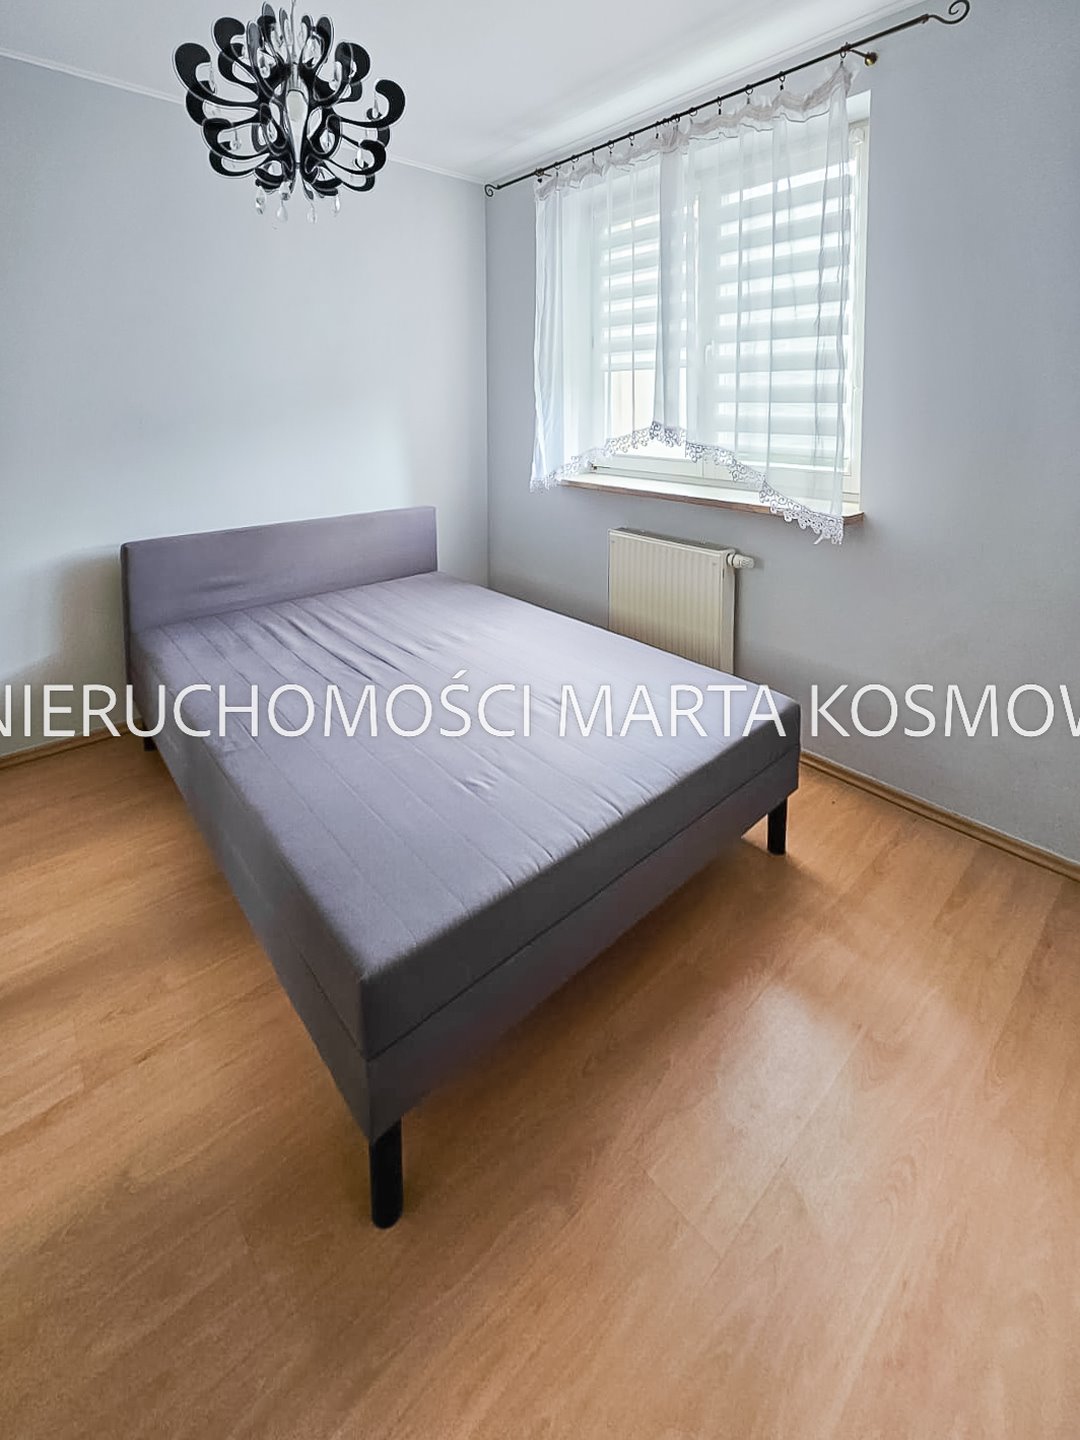 Mieszkanie dwupokojowe na wynajem Warszawa, Tarchomin, ul. Odkryta  43m2 Foto 10